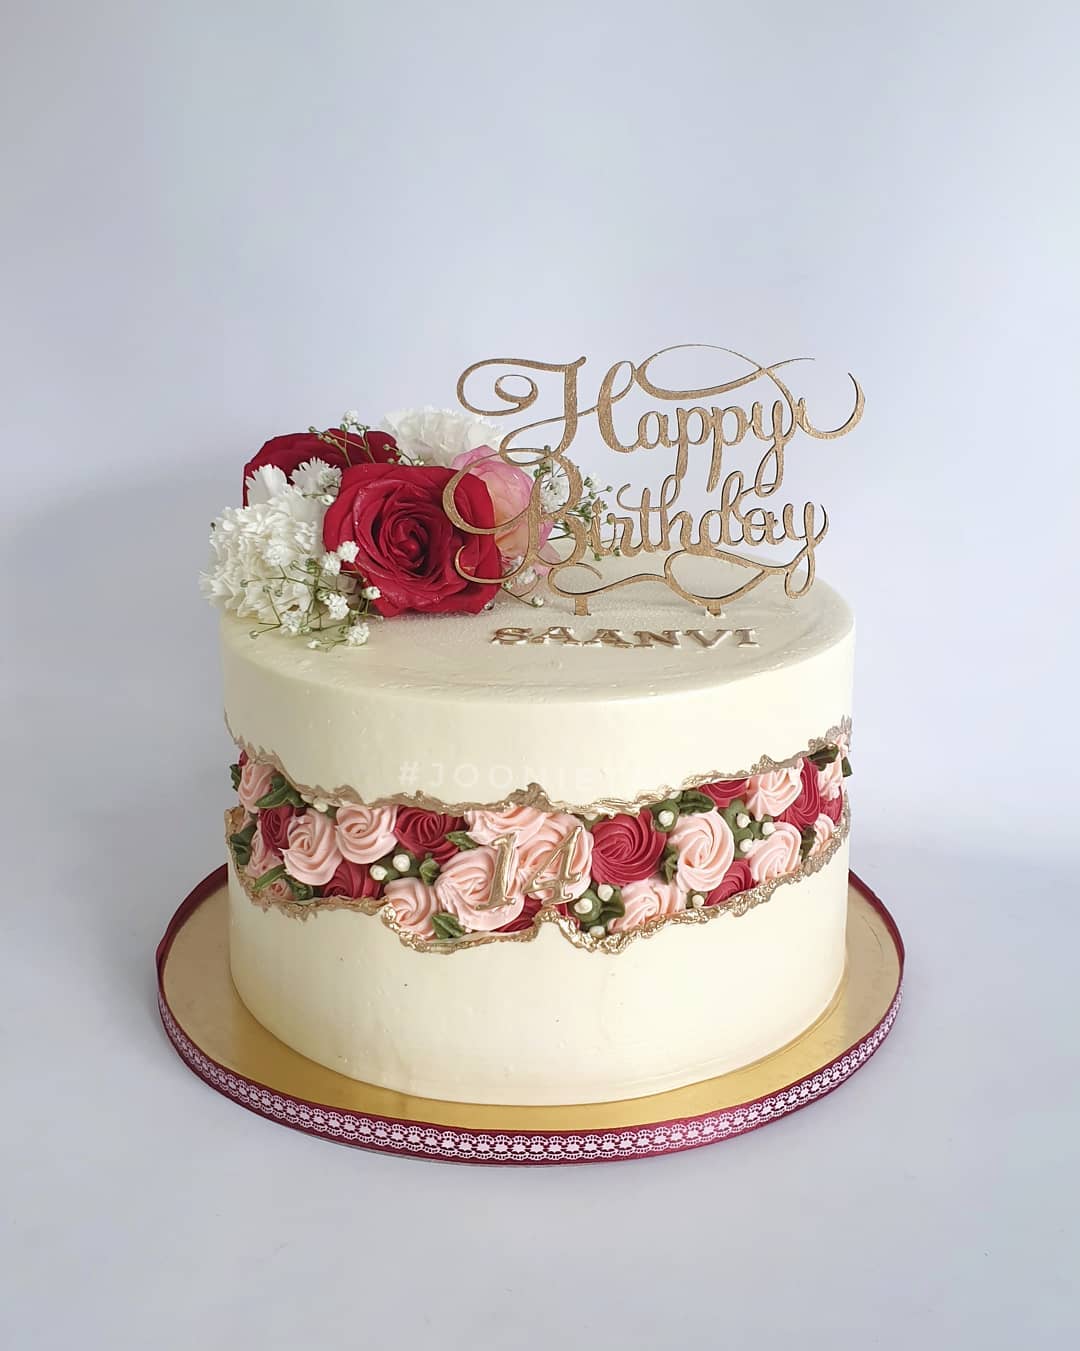 Happy Birthday Aanvi Cakes, Cards, Wishes